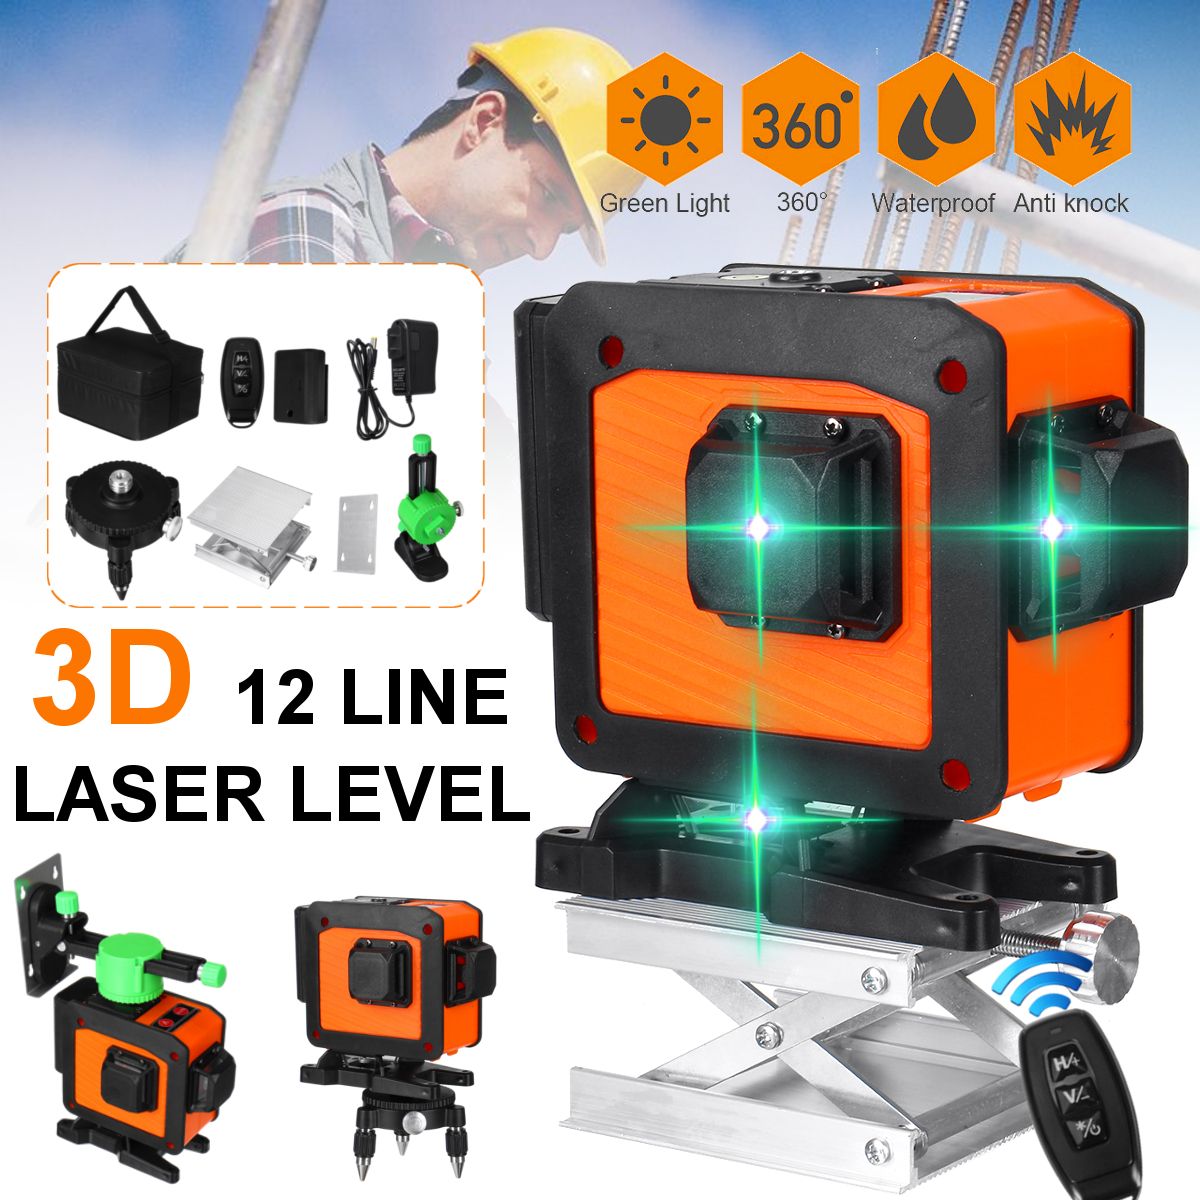 12-Line-Laser-Level-Green-Light-Auto-Self-Leveling-Cross-360deg-Rotary-Measuring-1740207